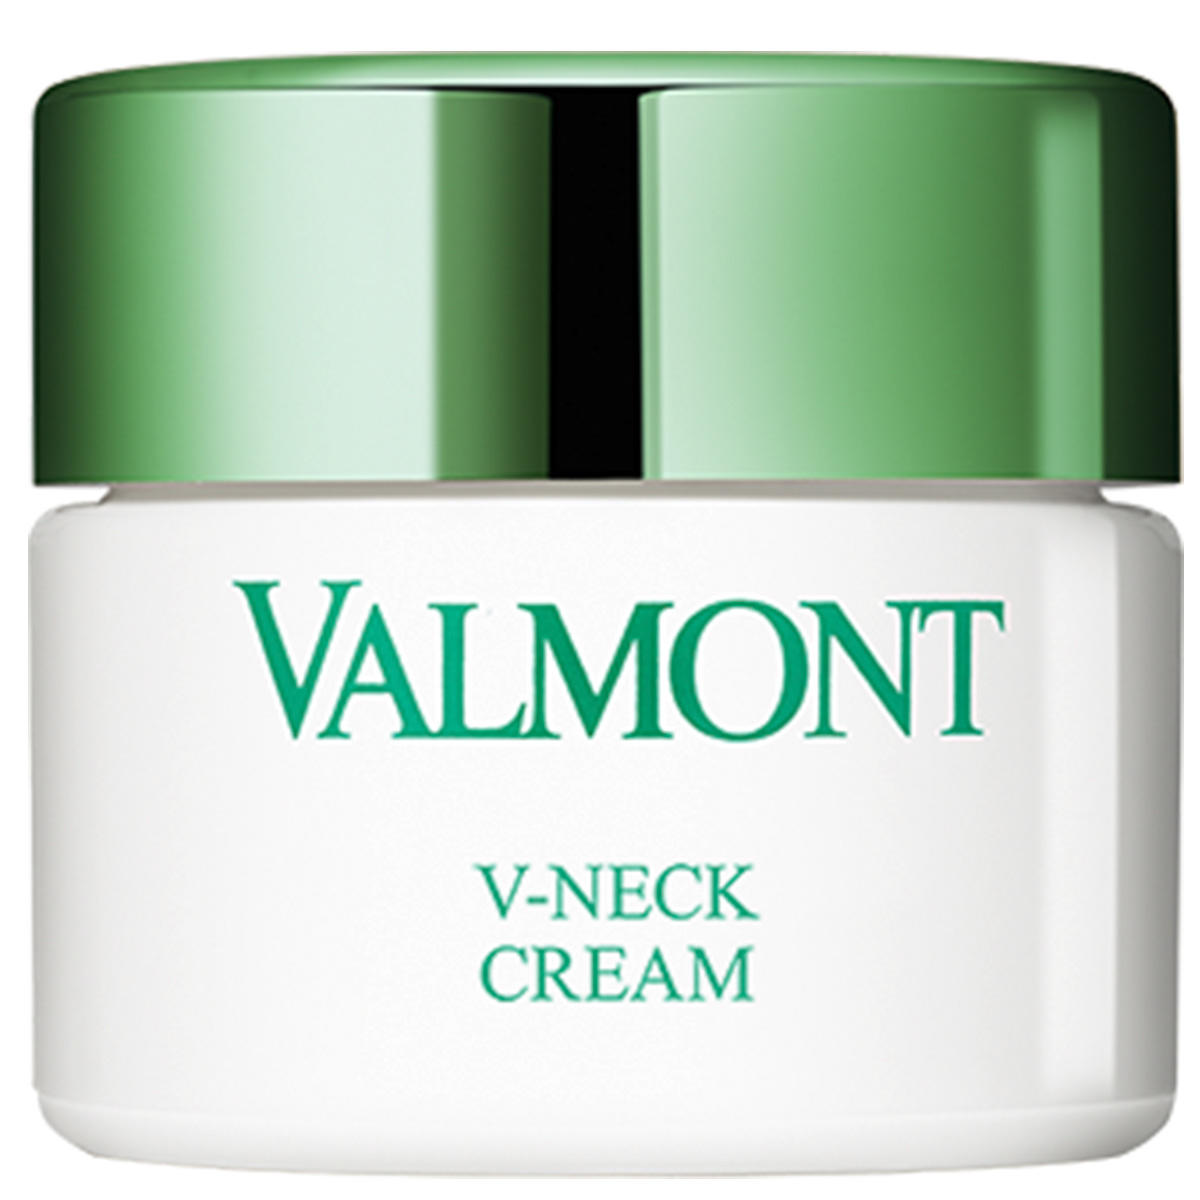 Valmont V-Neck Cream 50 ml - 1